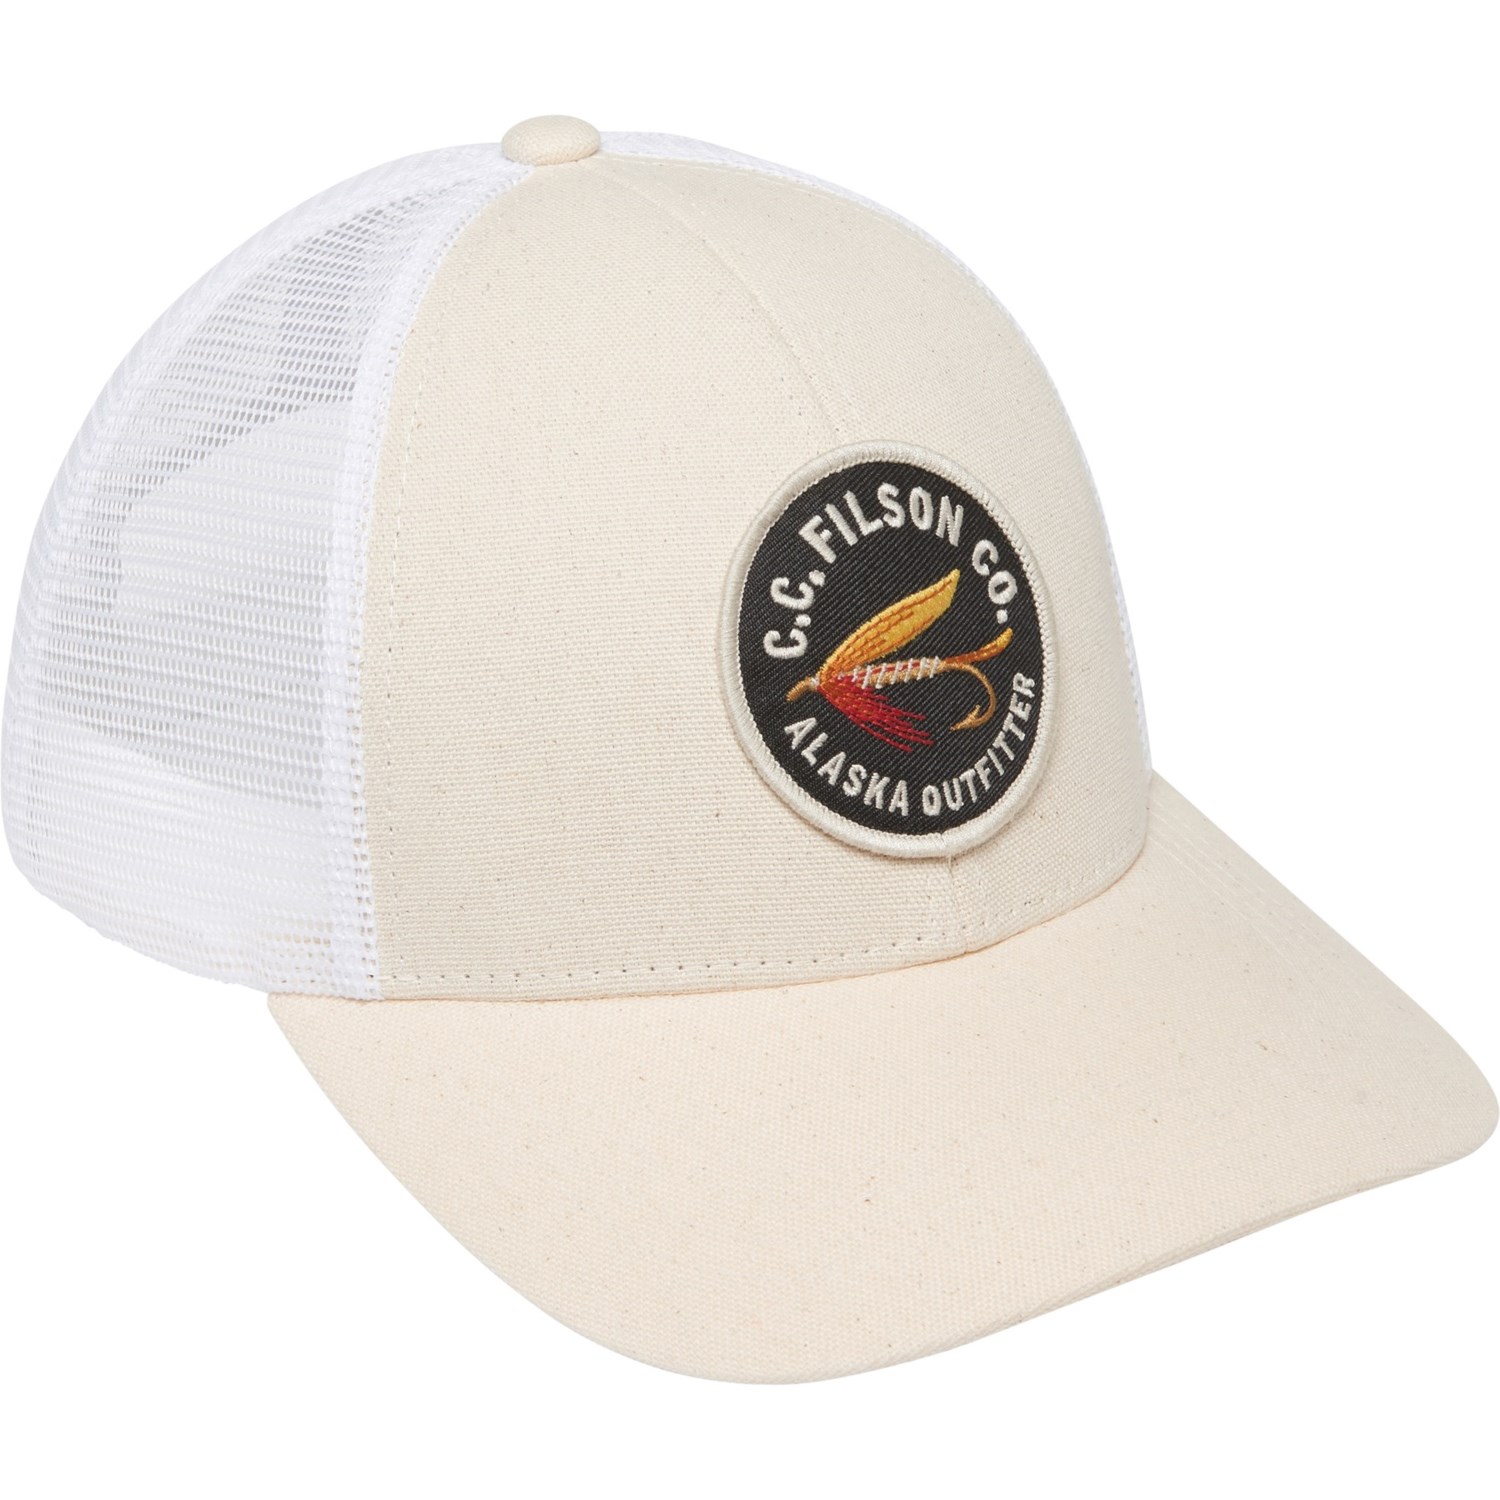 Filson Logger Mesh Trucker Hat (For Men) - Save 55%